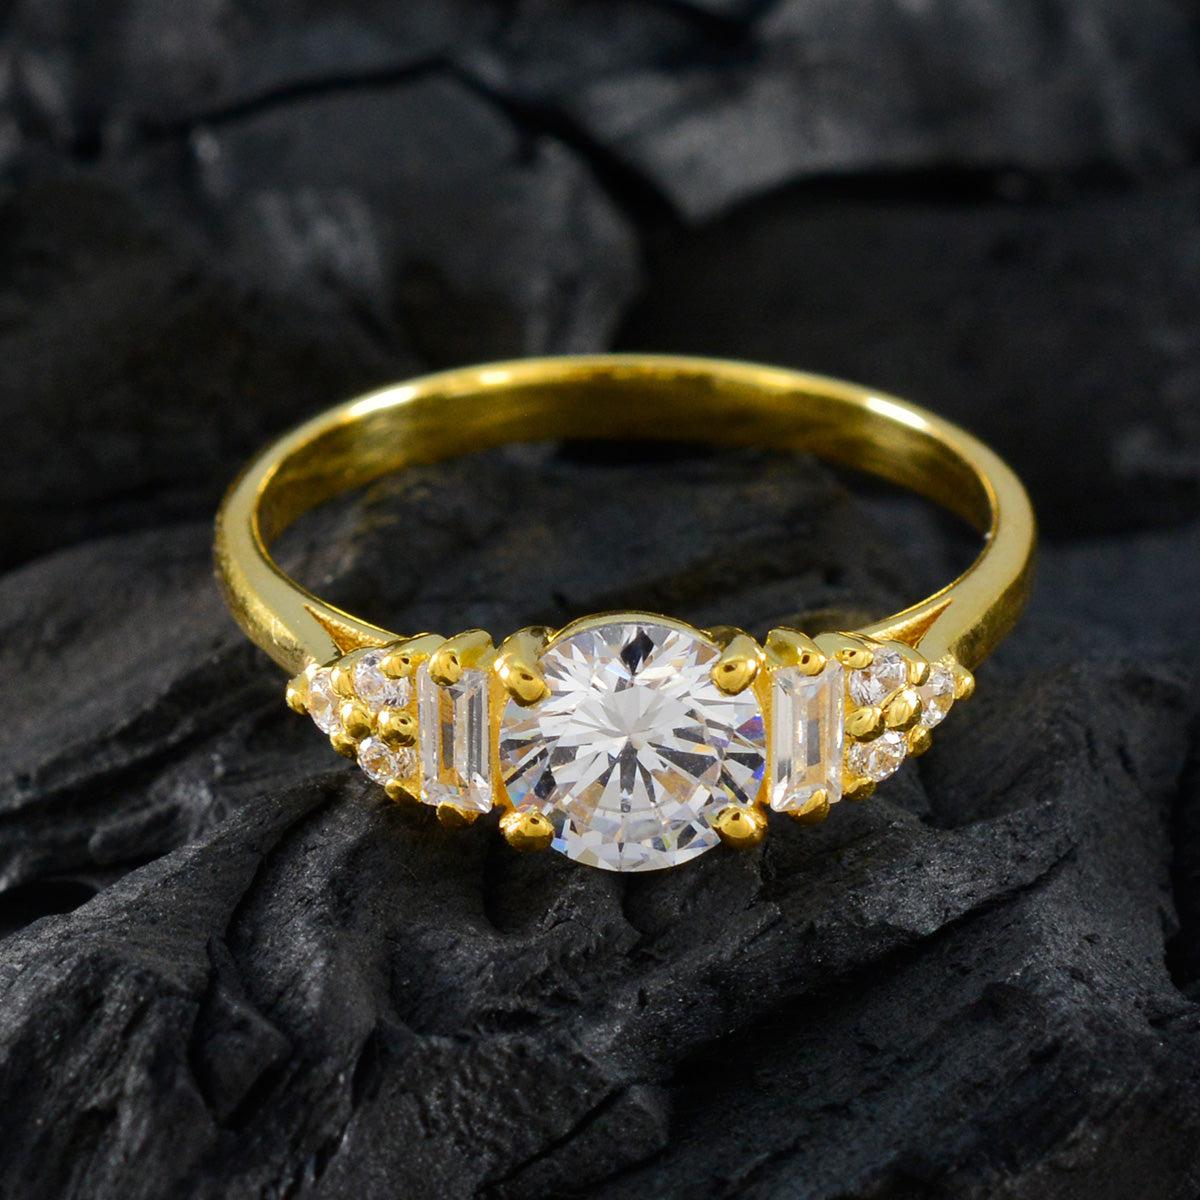 riyo bästa silverring med gult guldplätering vit cz sten rund form stiftinställning anpassade smycken svart fredag ring